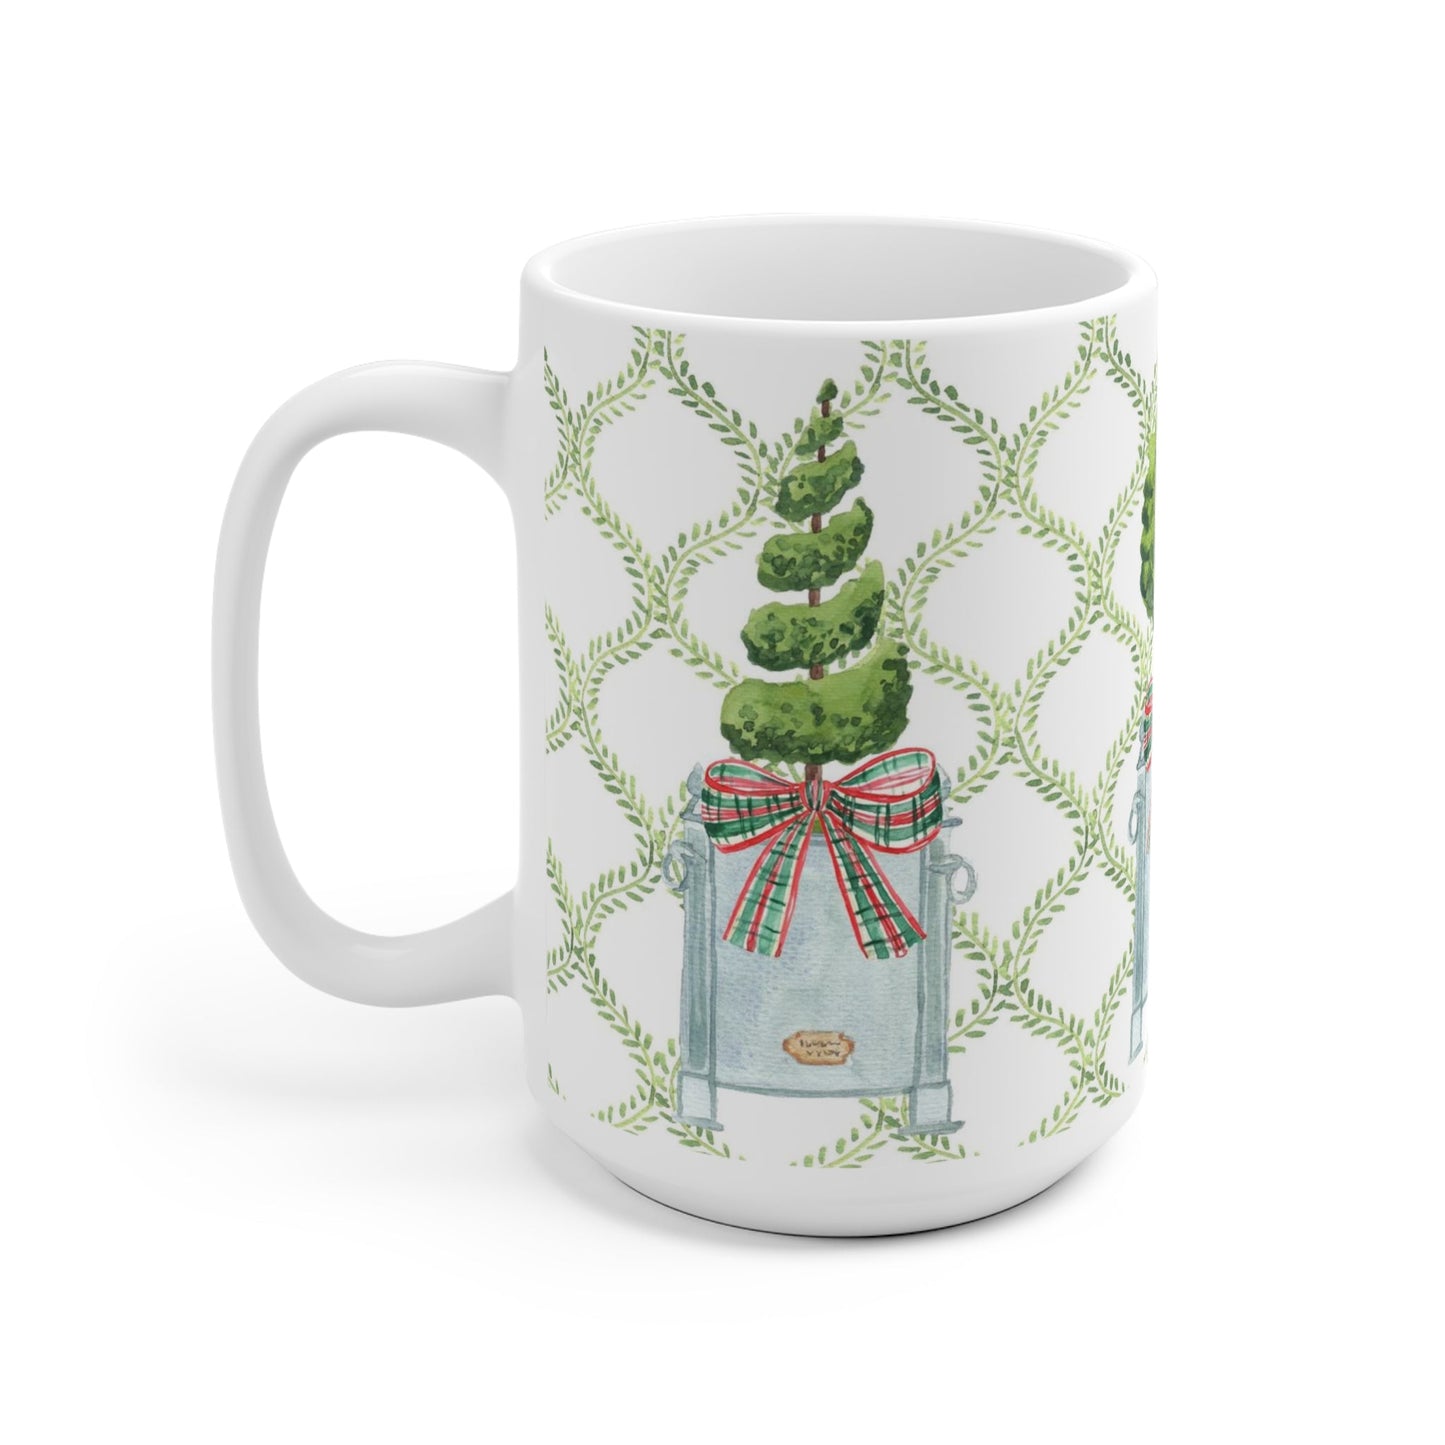 Ceramic Mug With Christmas Topiary With Christmas Bows